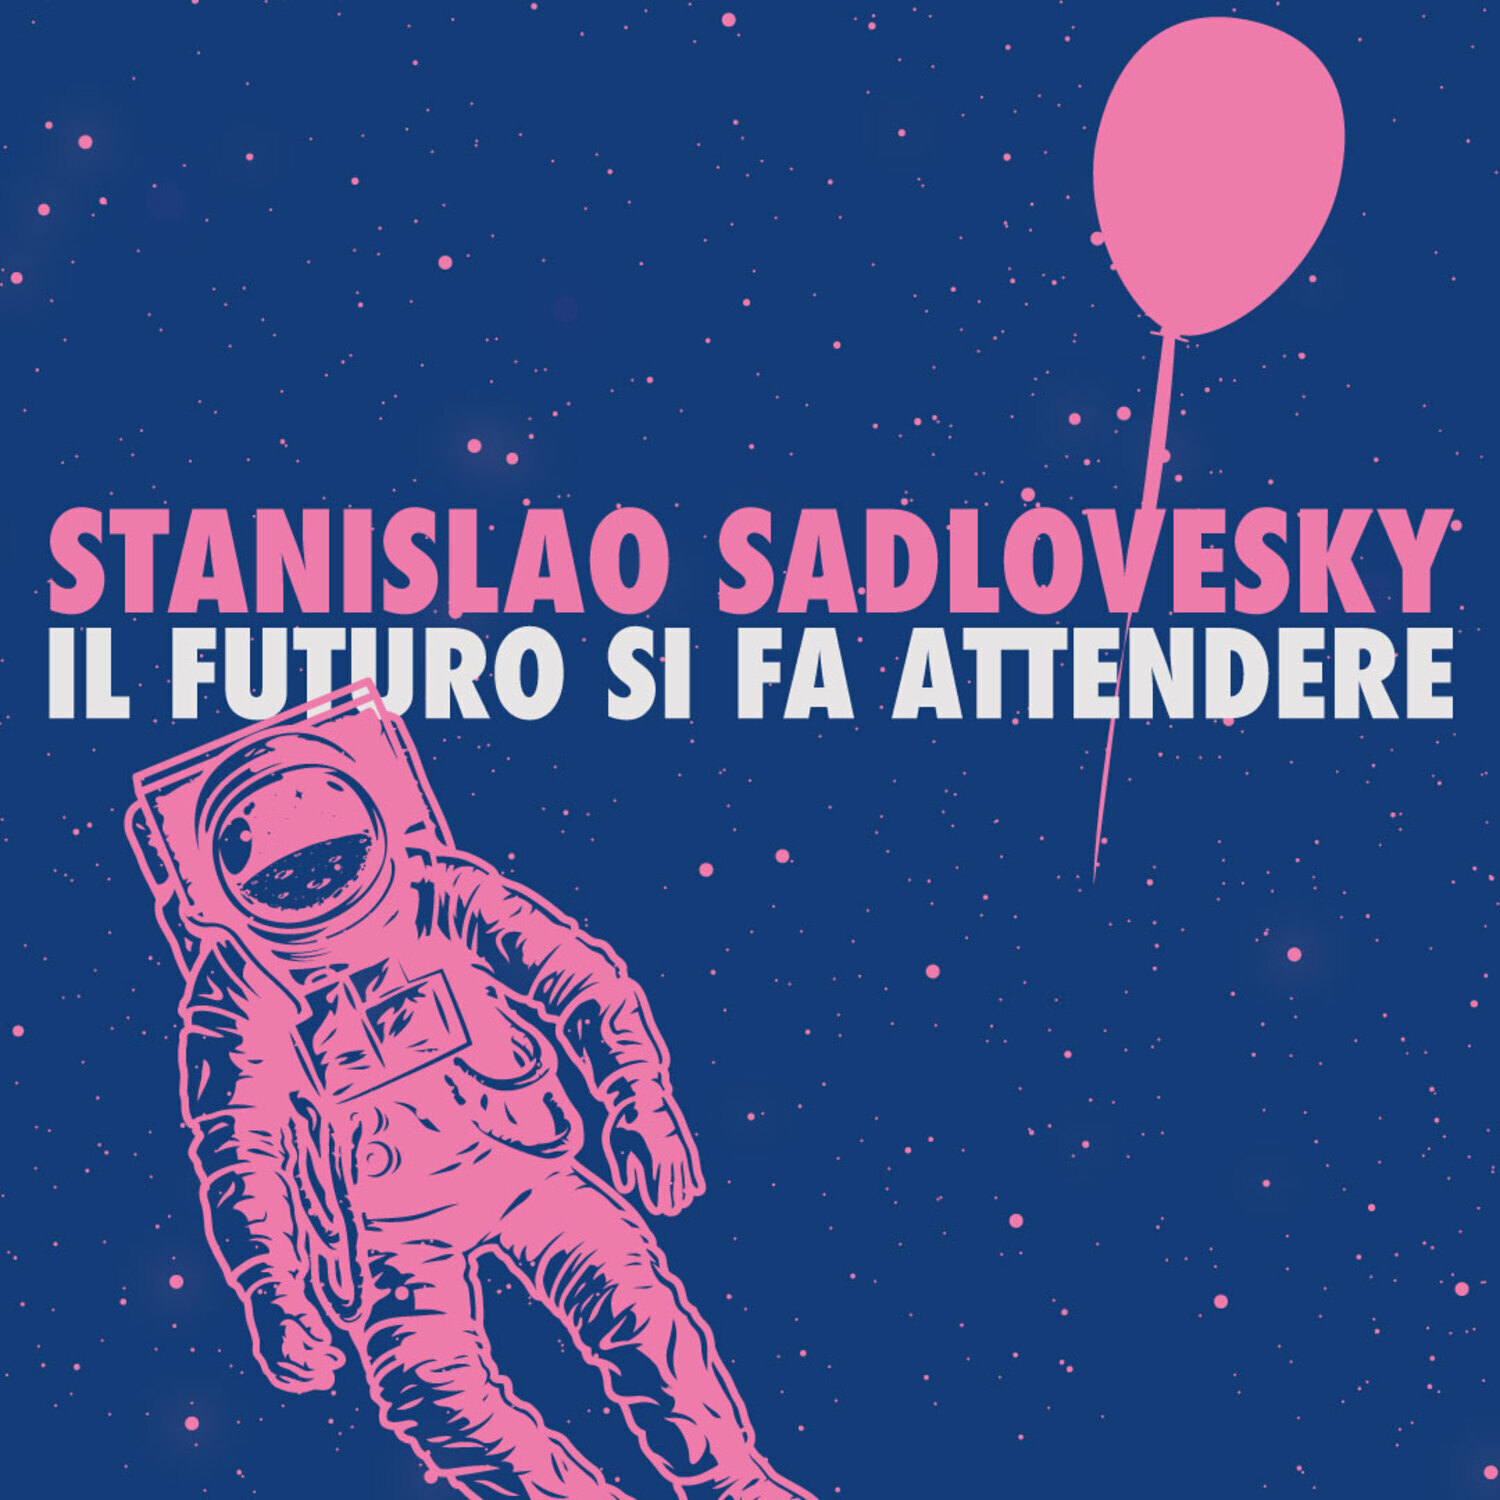 Al momento stai visualizzando Stanislao Sadlovesky: il videoclip de “Il futuro si fa attendere”